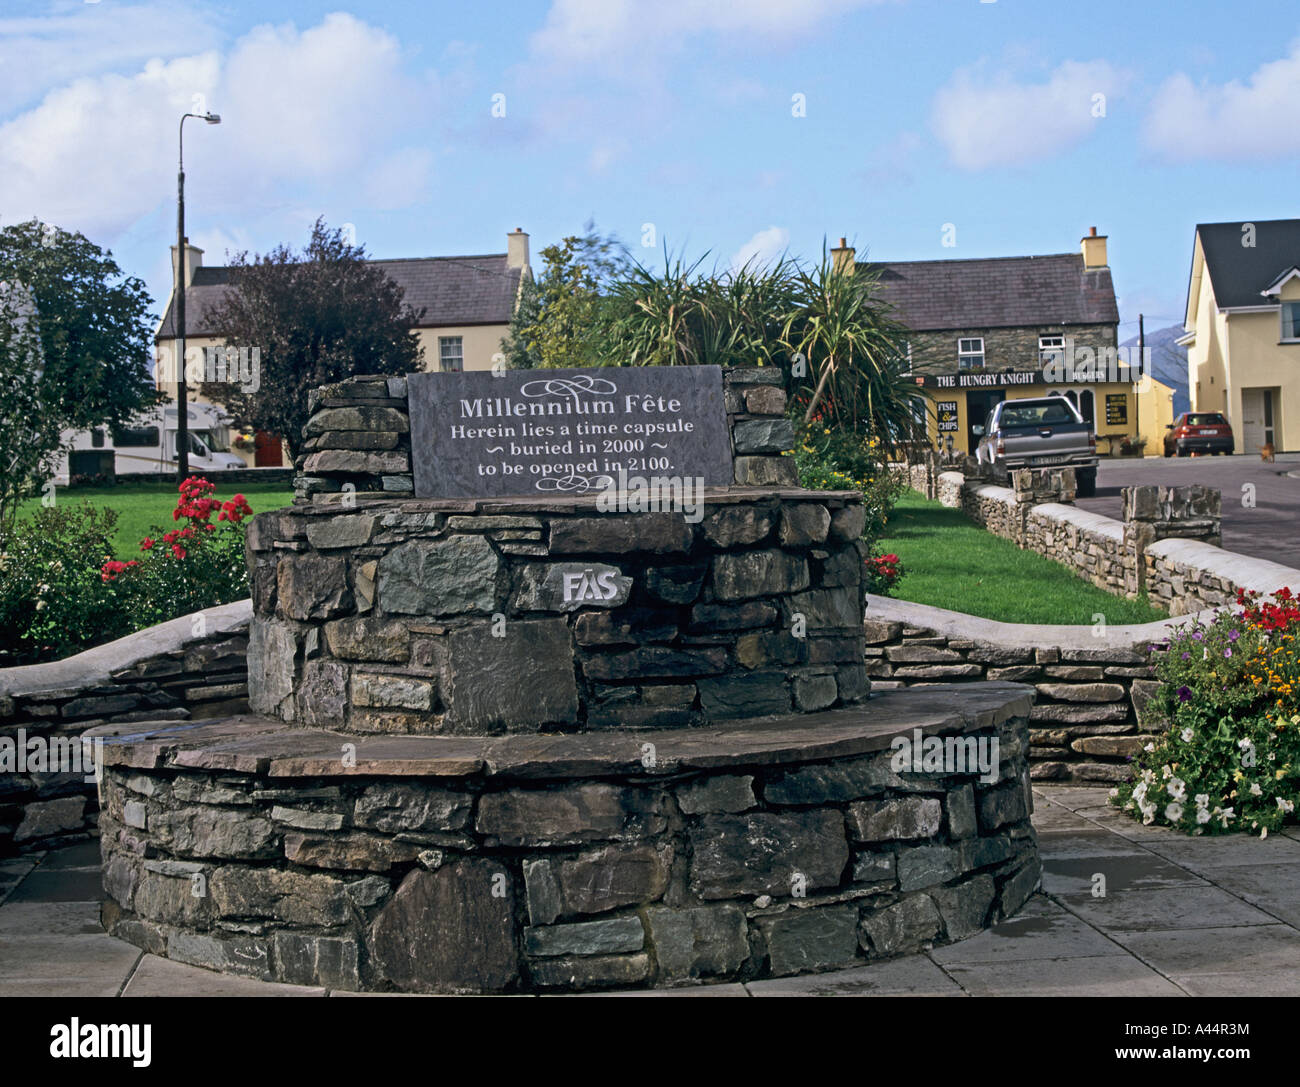 SNEEM COUNTY KERRY Republik von Irland Europäische UNION ein steinernes Monument zum Gedenken an den Millennium enthält Zeitkapsel Stockfoto